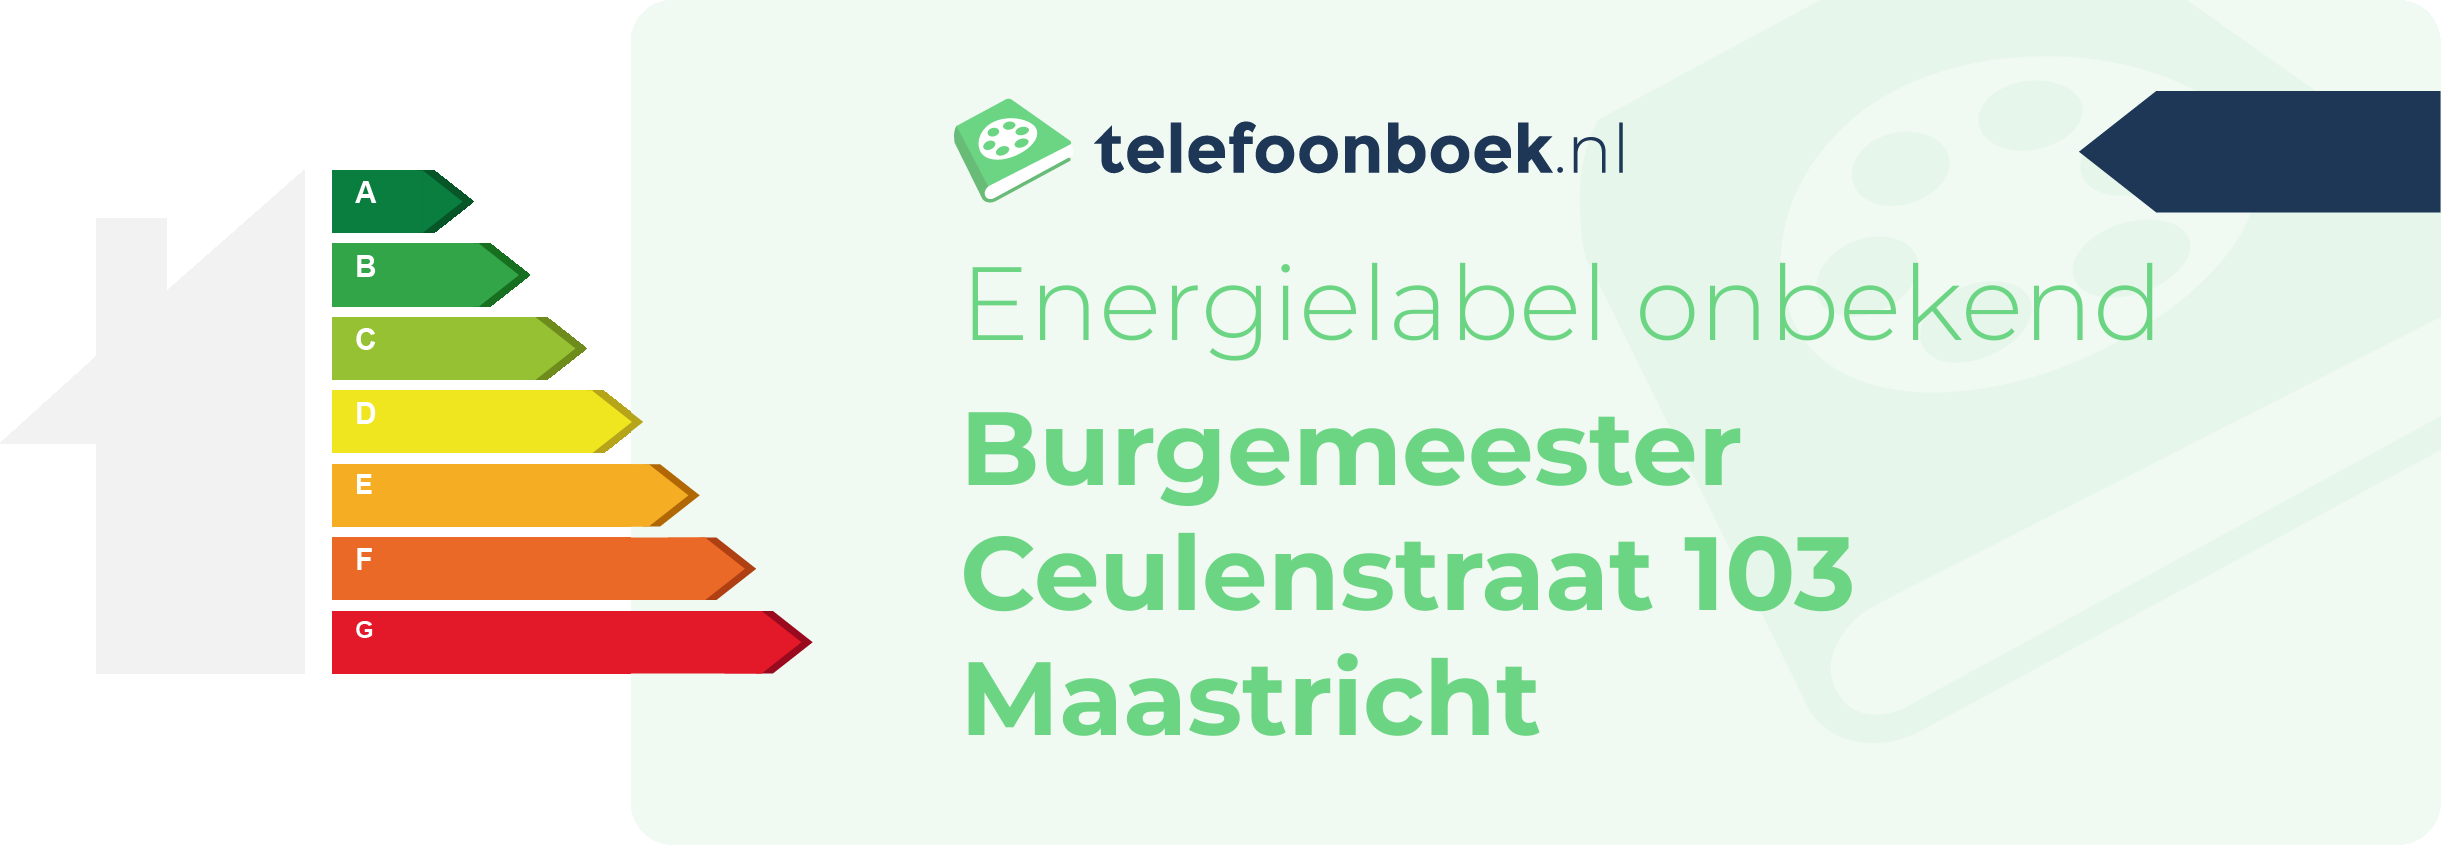 Energielabel Burgemeester Ceulenstraat 103 Maastricht